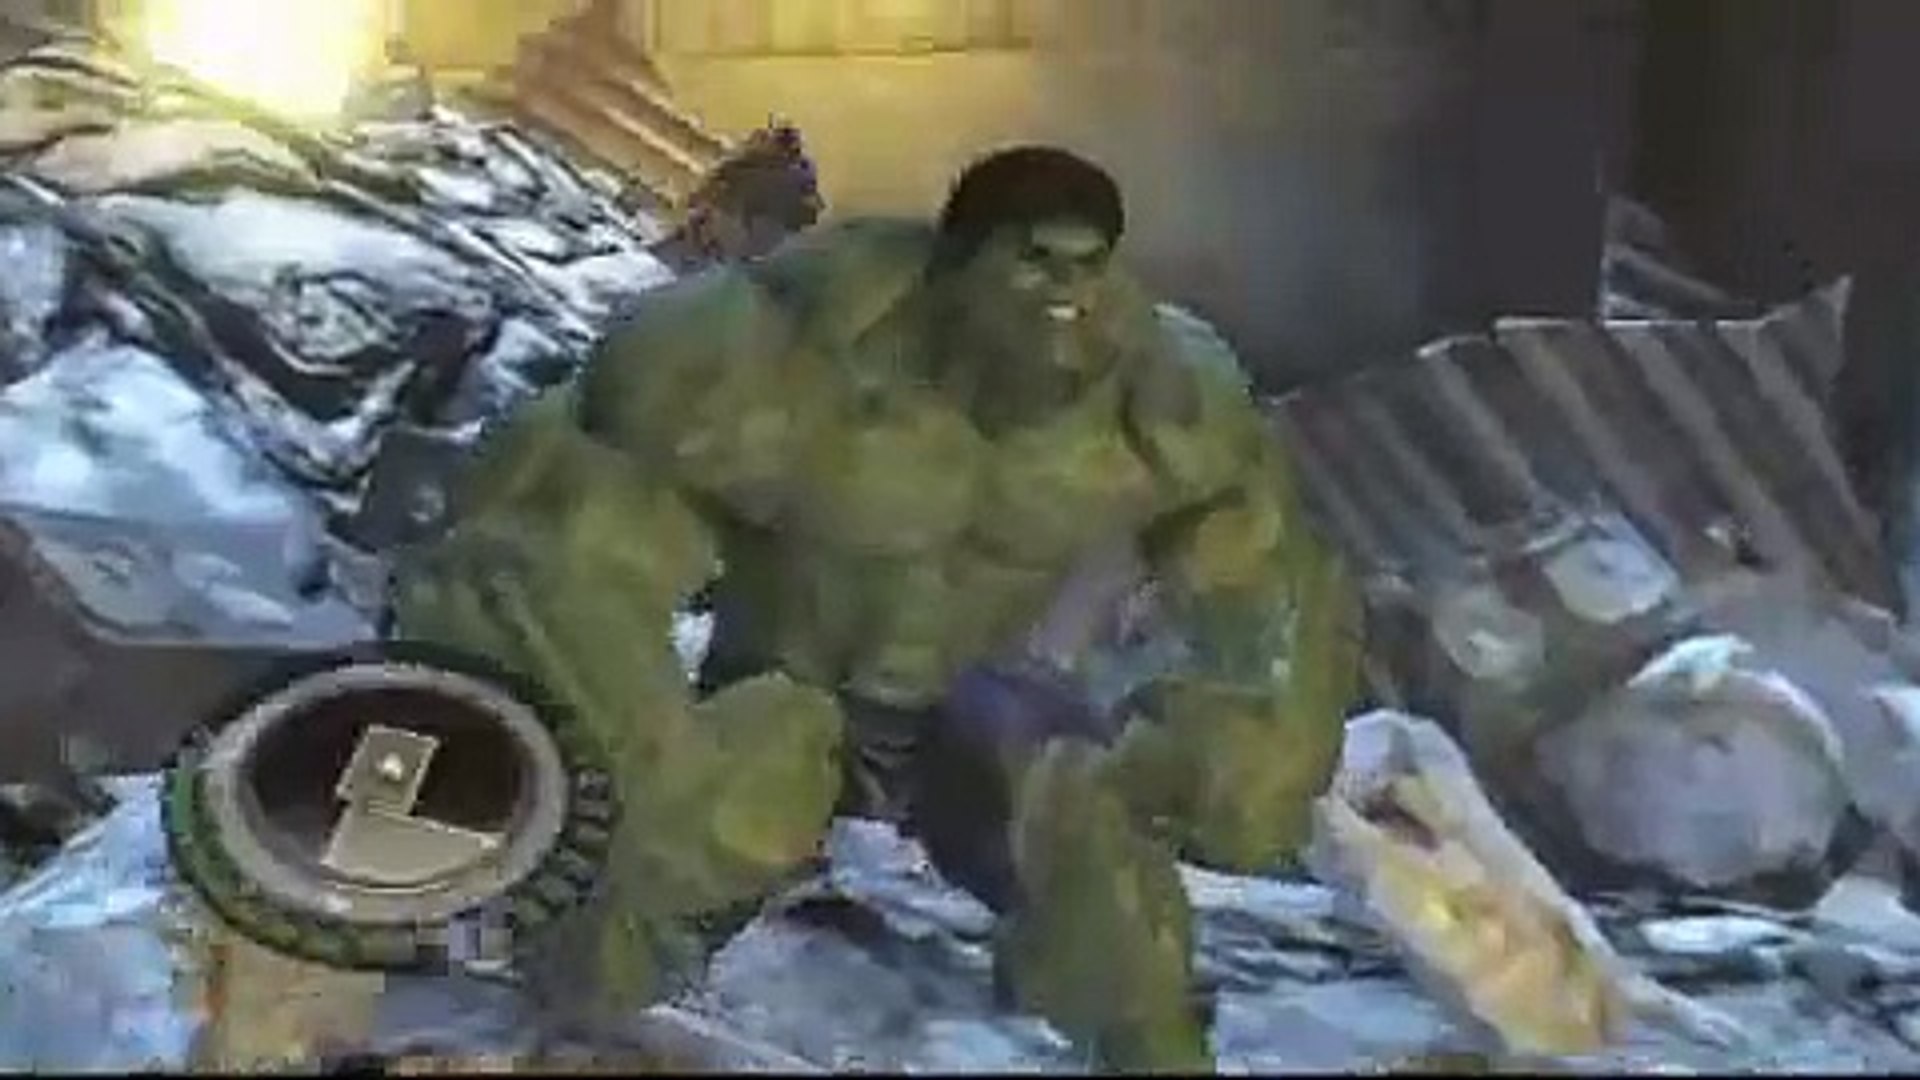 The Incredible Hulk PS3 Smashing gameplay - video Dailymotion